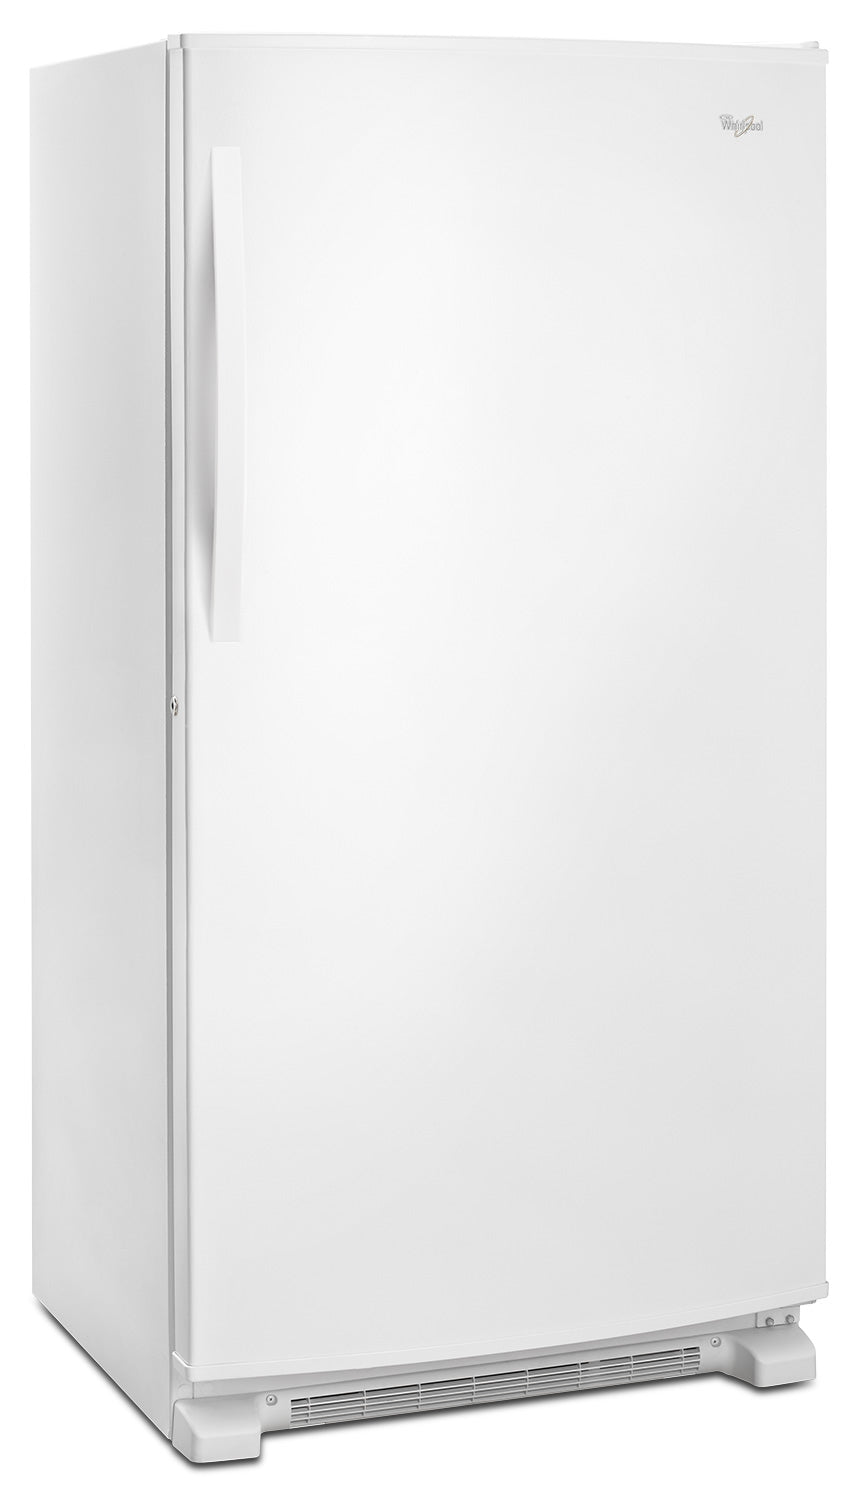 Whirlpool White Frost Free Upright Freezer (19.6 Cu. Ft.) - WZF79R20DW